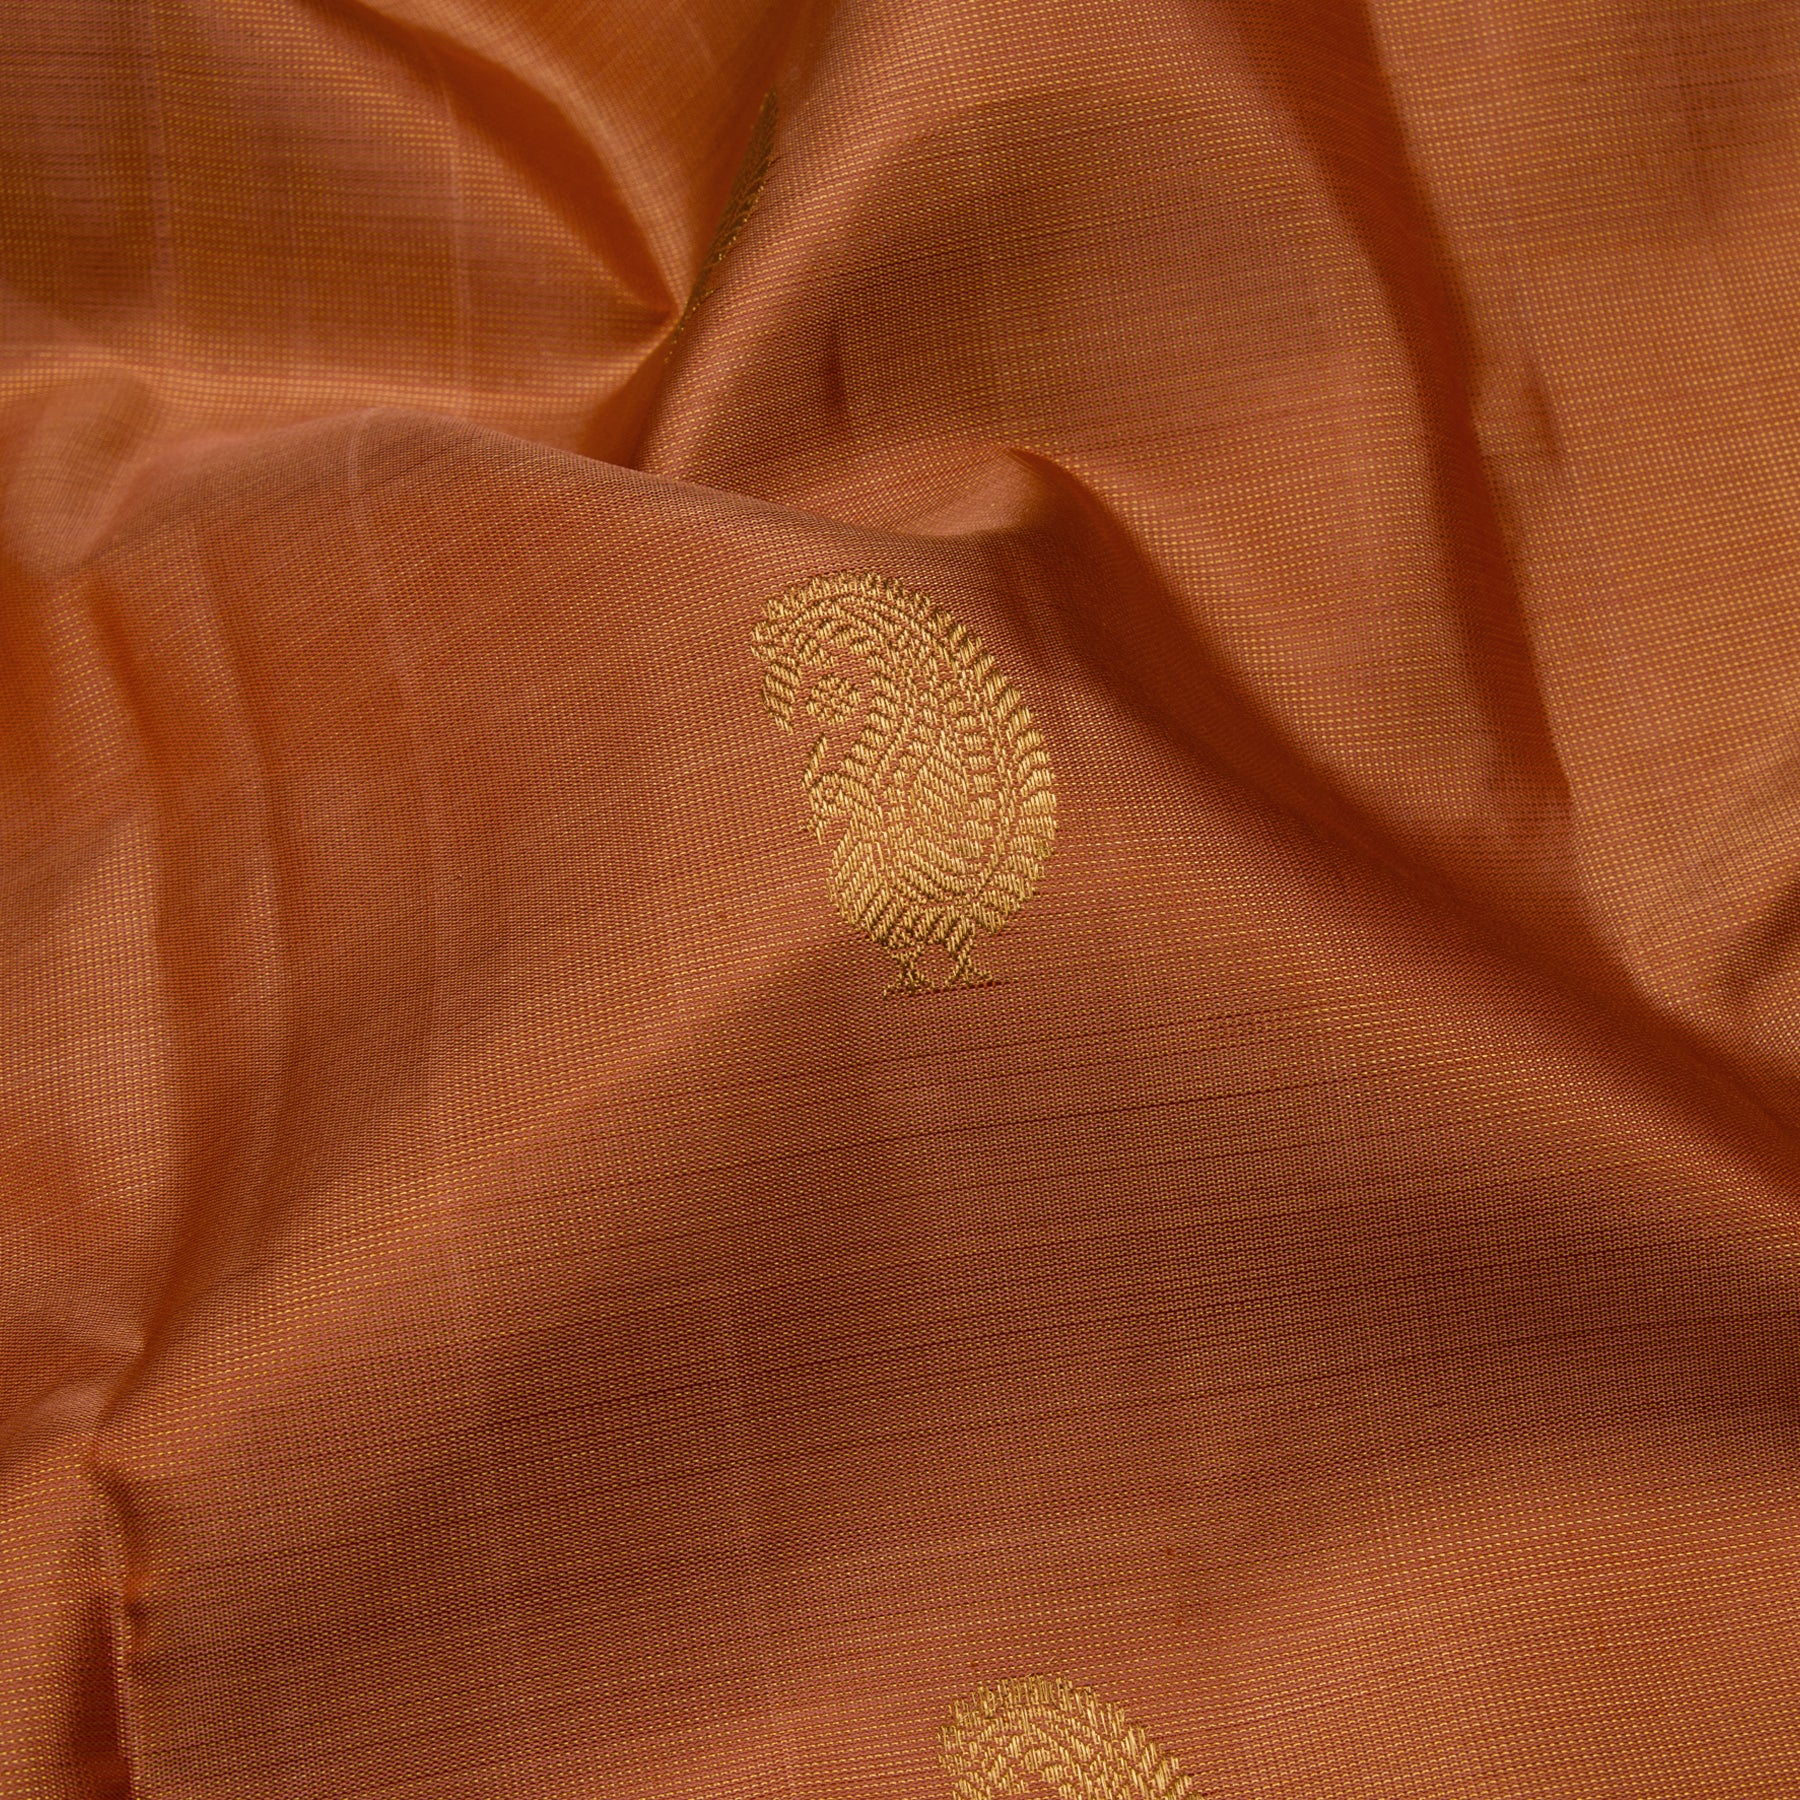 Kanakavalli Kanjivaram Silk Sari 23-110-HS001-13593 - Fabric View